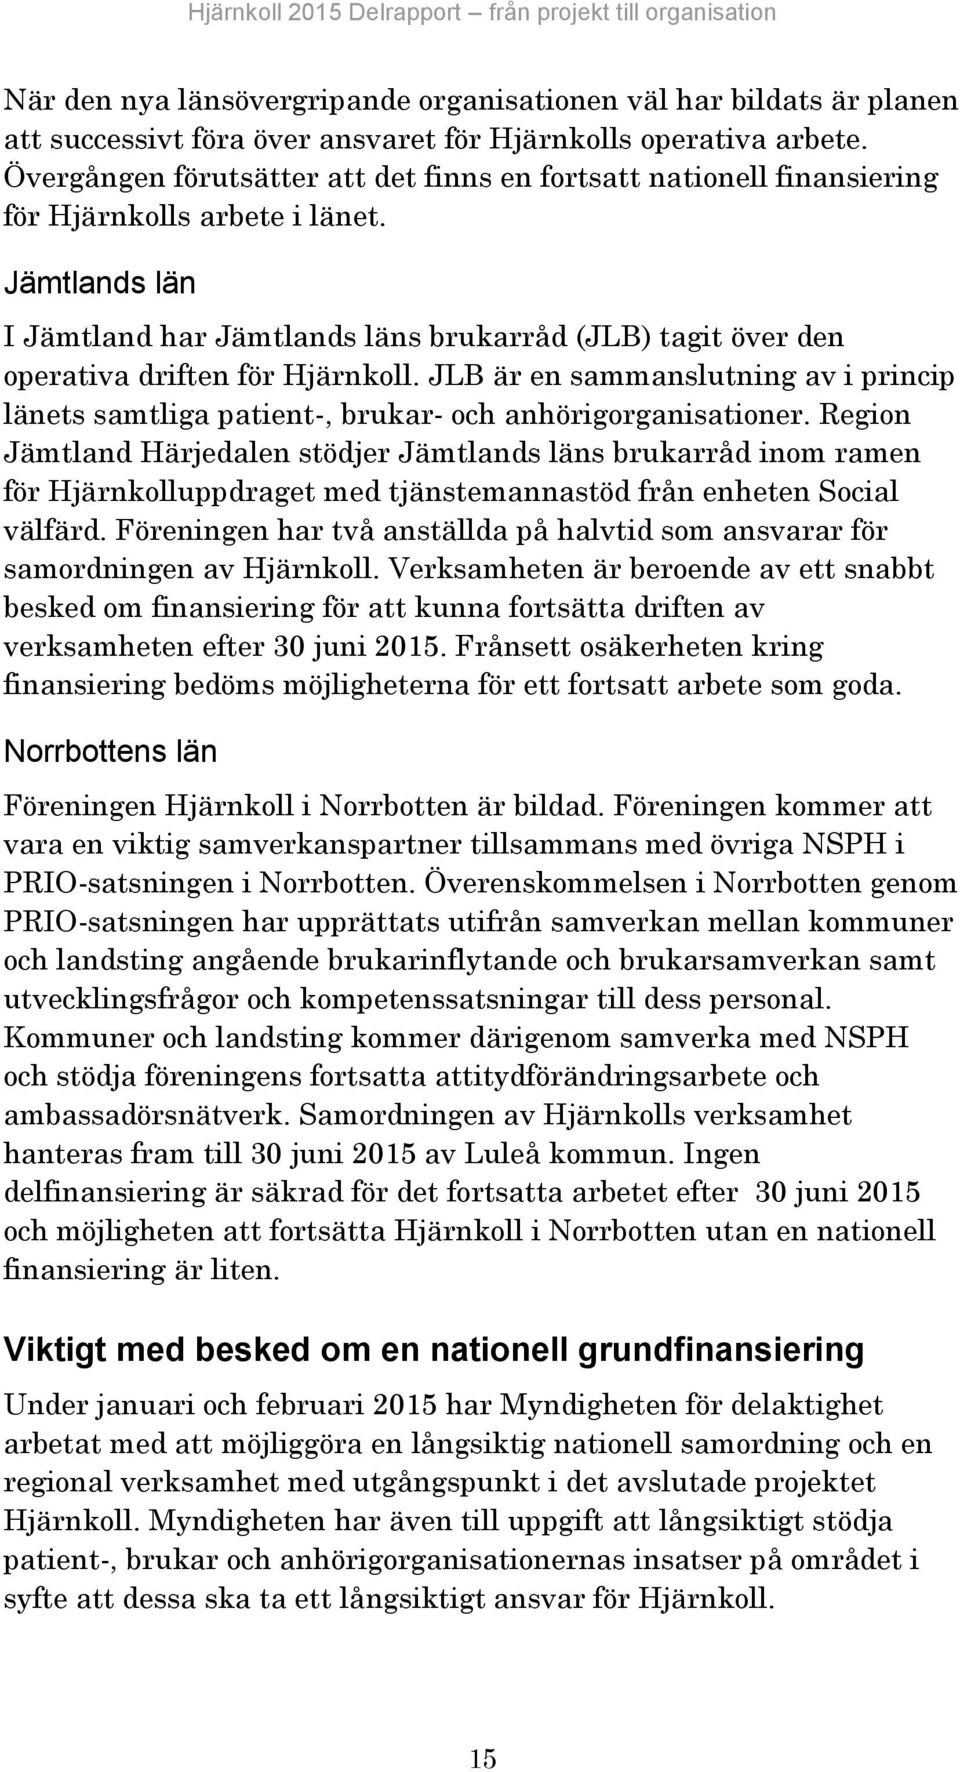 Jämtlands län I Jämtland har Jämtlands läns brukarråd (JLB) tagit över den operativa driften för Hjärnkoll.